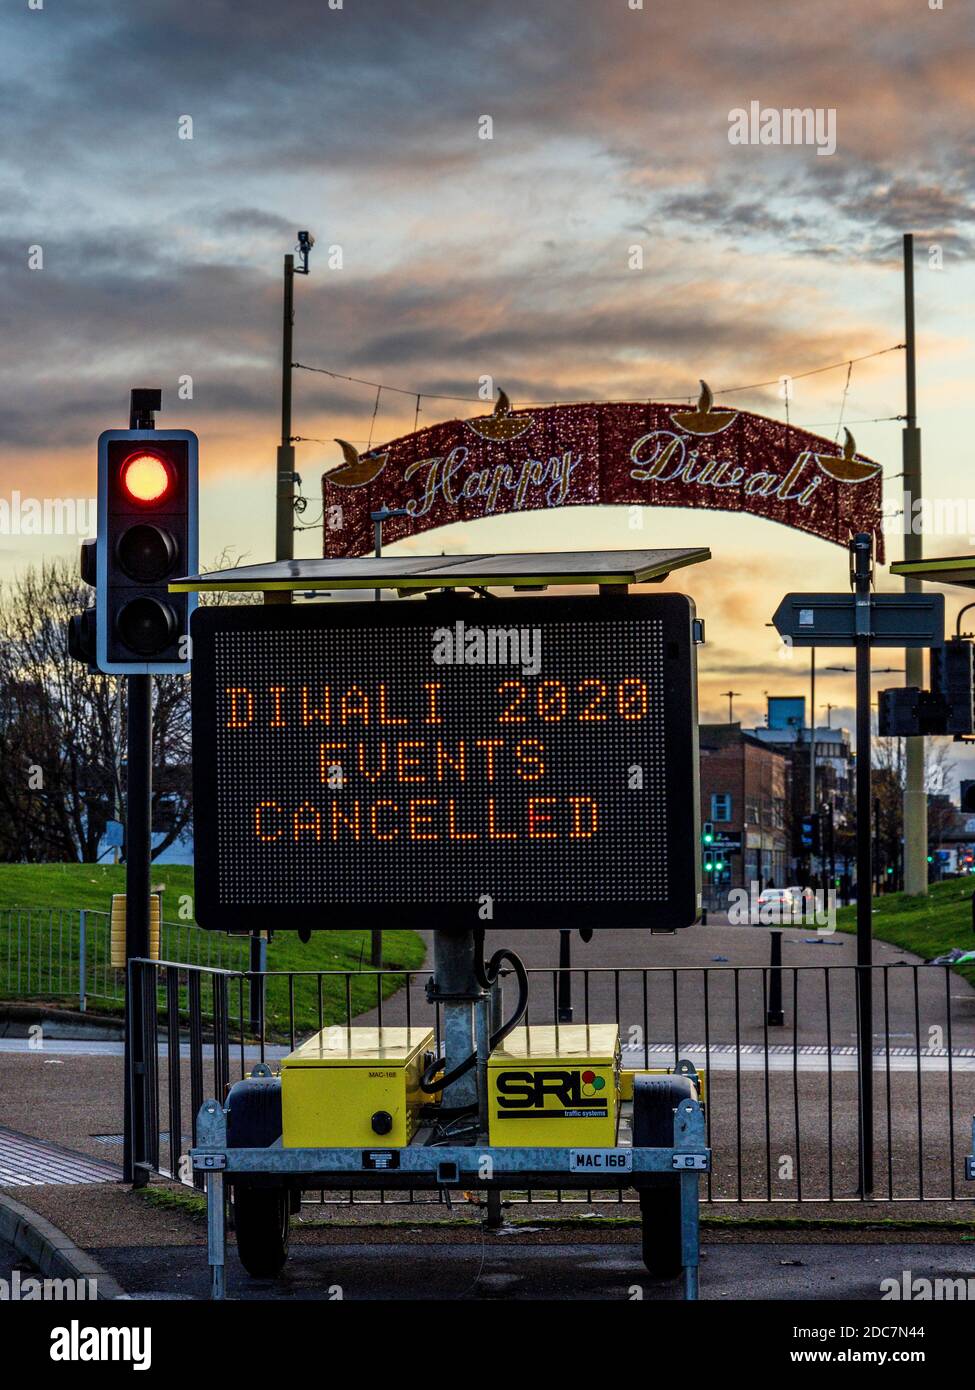 Les événements de Diwali 2020 ont été annulés à Leicester en raison de la pandémie de coronavirus Covid-19. Banque D'Images